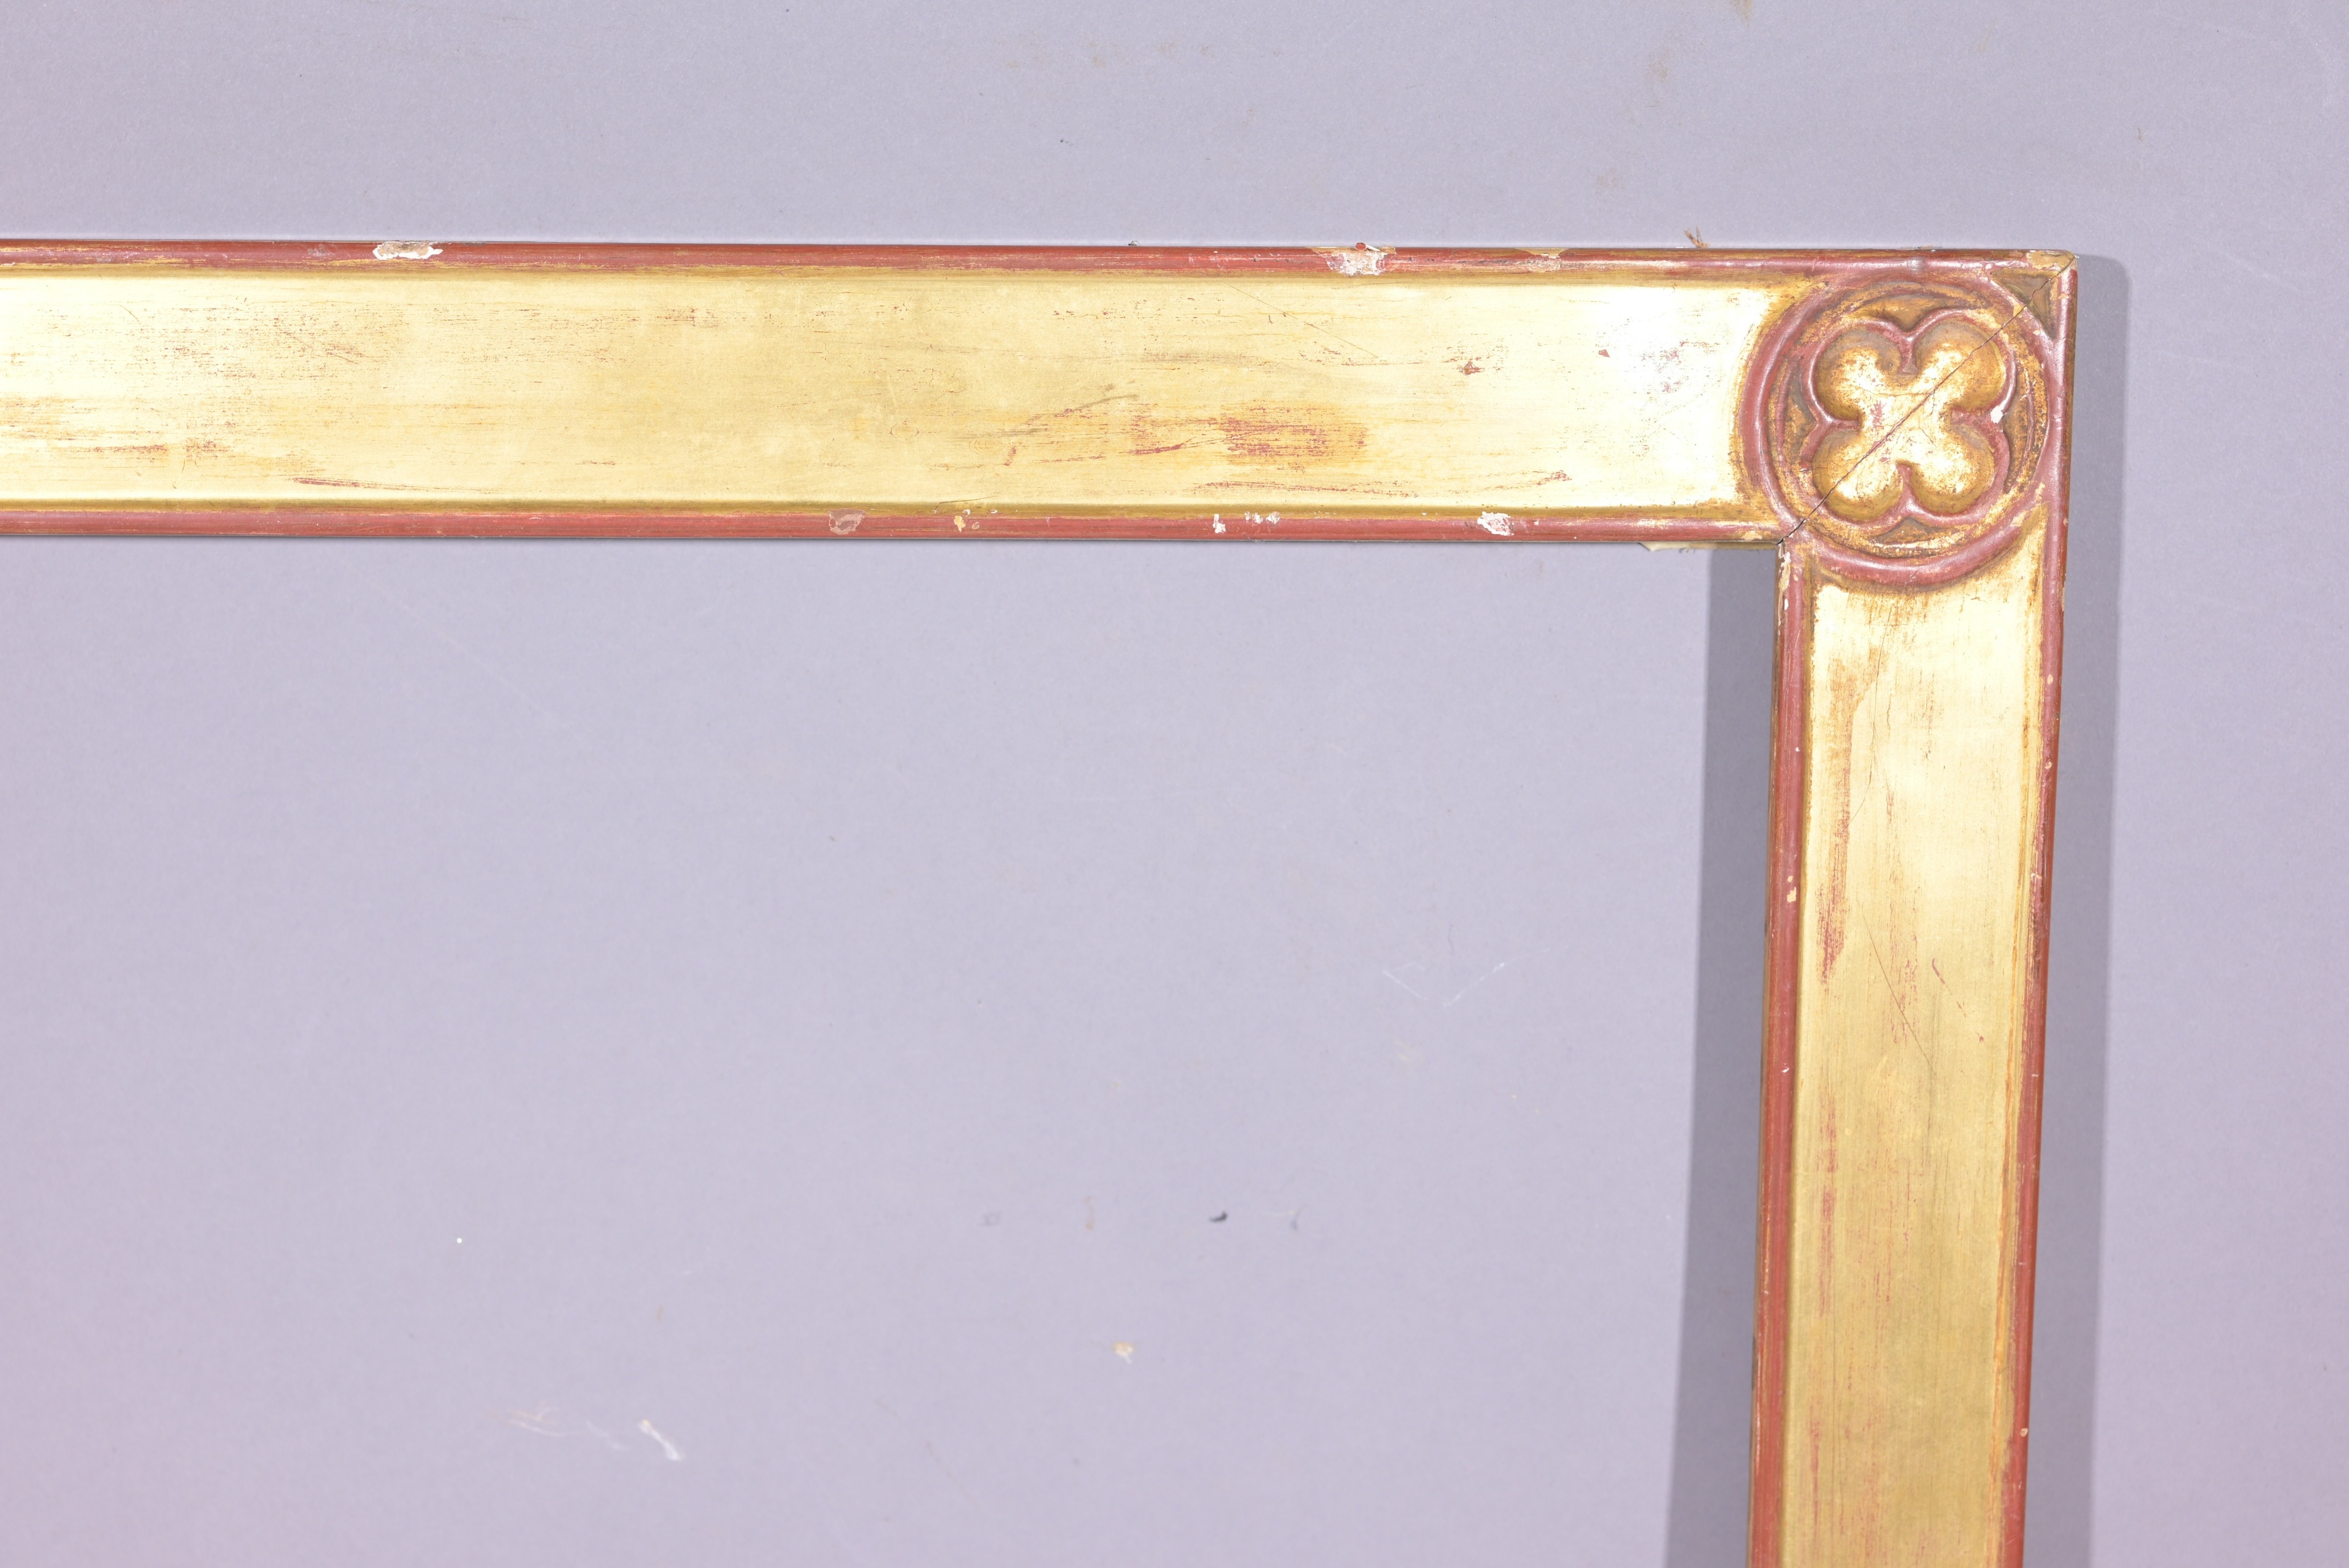 Antique Gilt Wood Frame - 21.5 x 21.25 - Image 4 of 8